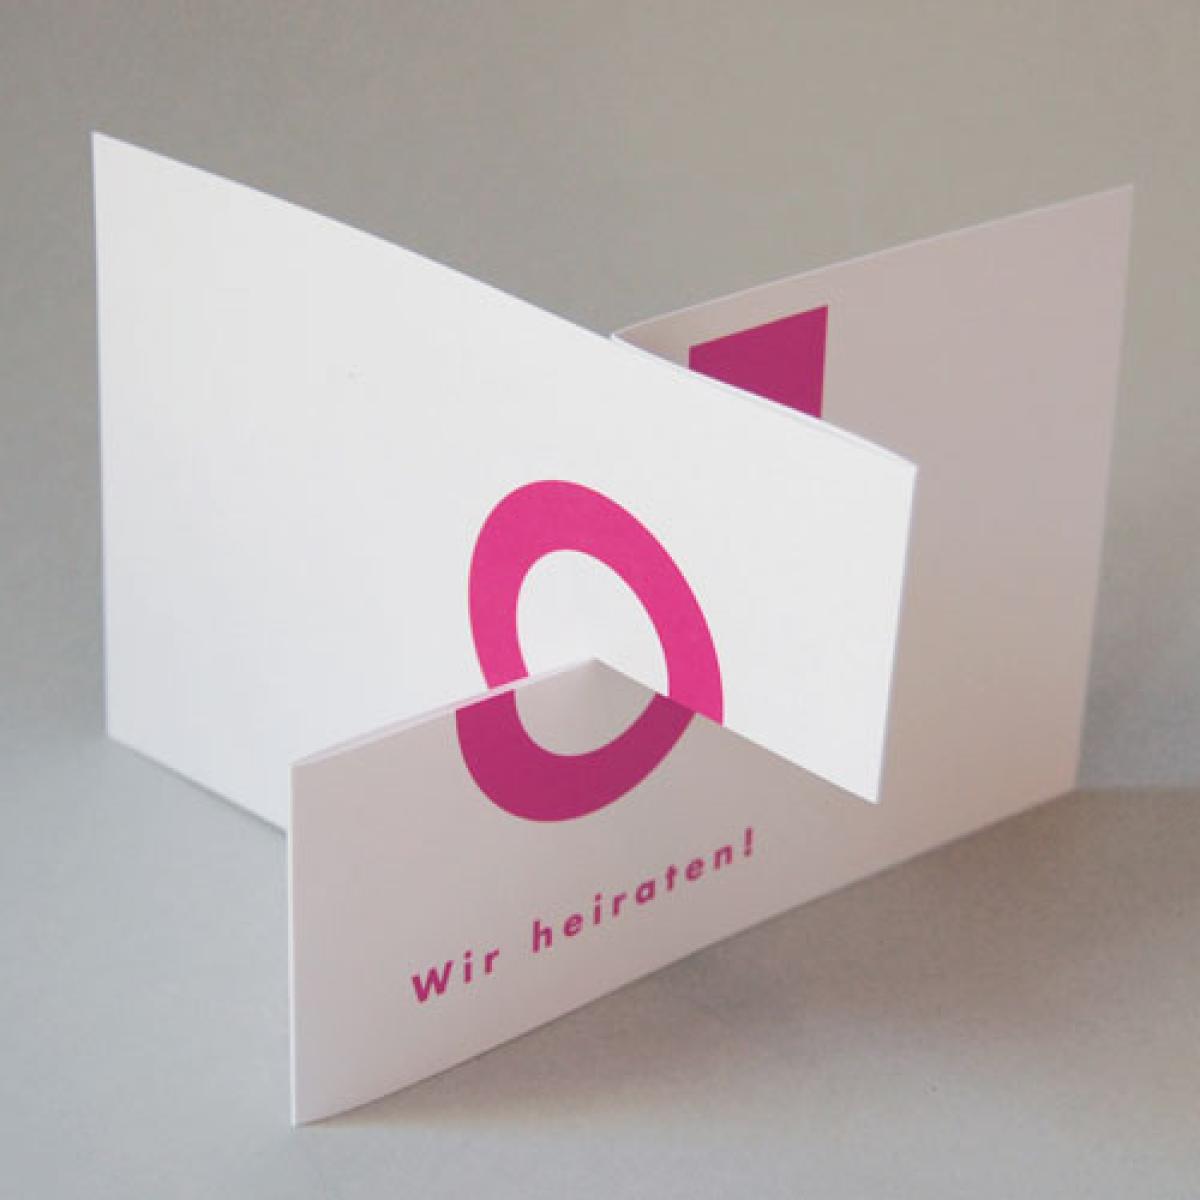 10 Hochzeitseinladungen mit pinken Kuverts: Wir heiraten!